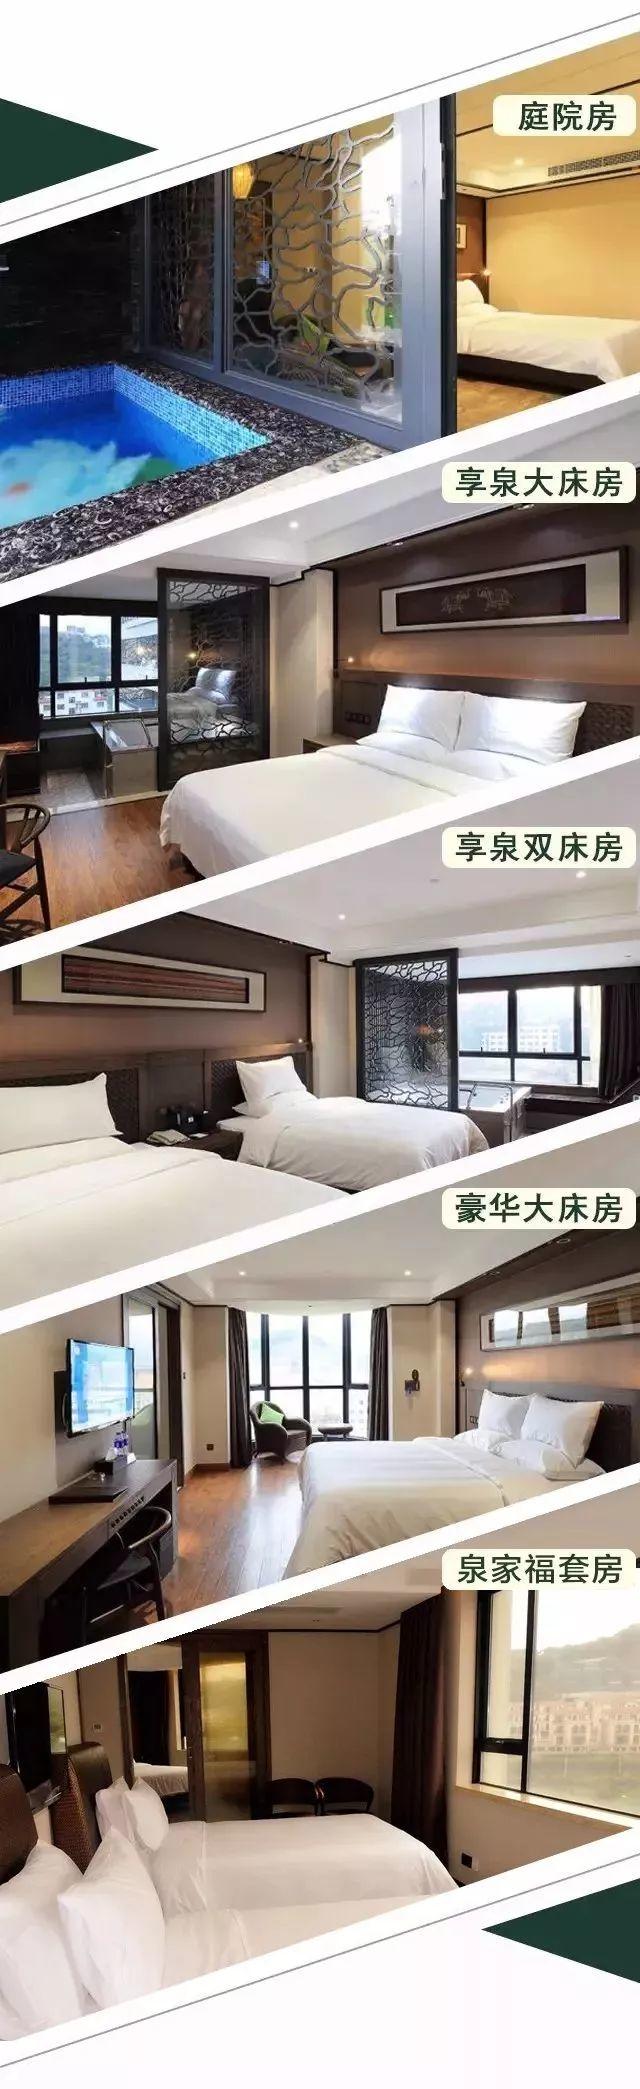 【广州·从化】亨来斯登珍稀温泉养生酒店,580元起/套丨豪华房(6月)特价